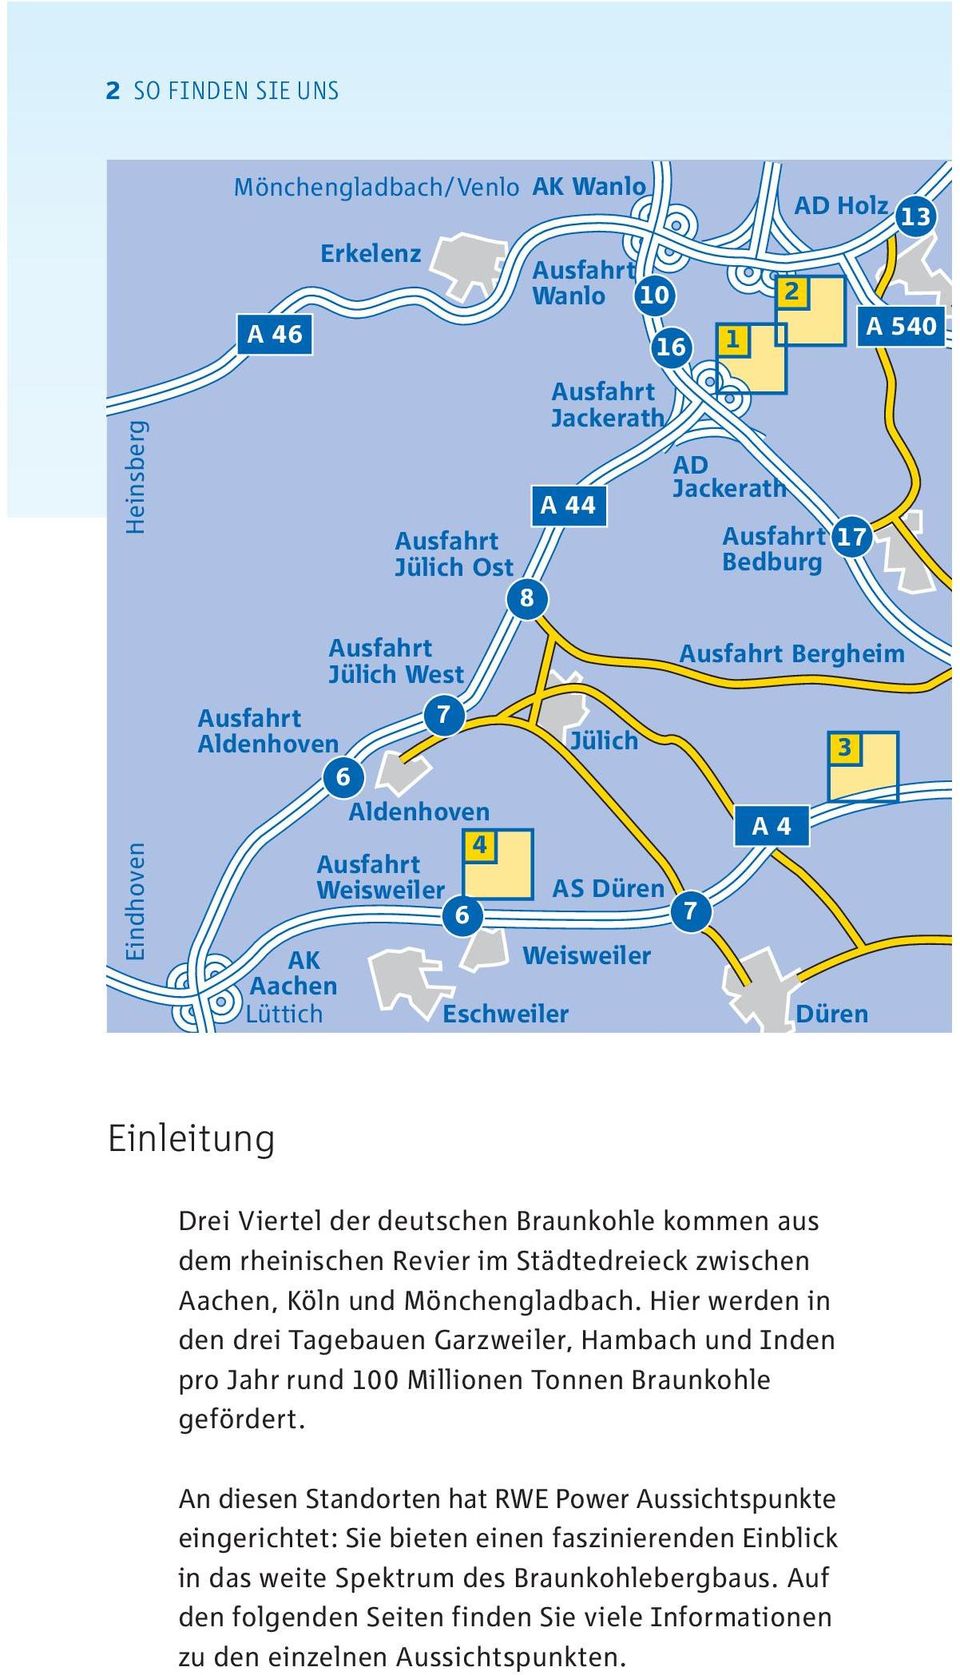 Städtedreieck zwischen Aachen, Köln und Mönchengladbach. Hier werden in den drei Tagebauen Garzweiler, Hambach und Inden pro Jahr rund 100 Millionen Tonnen Braunkohle gefördert.